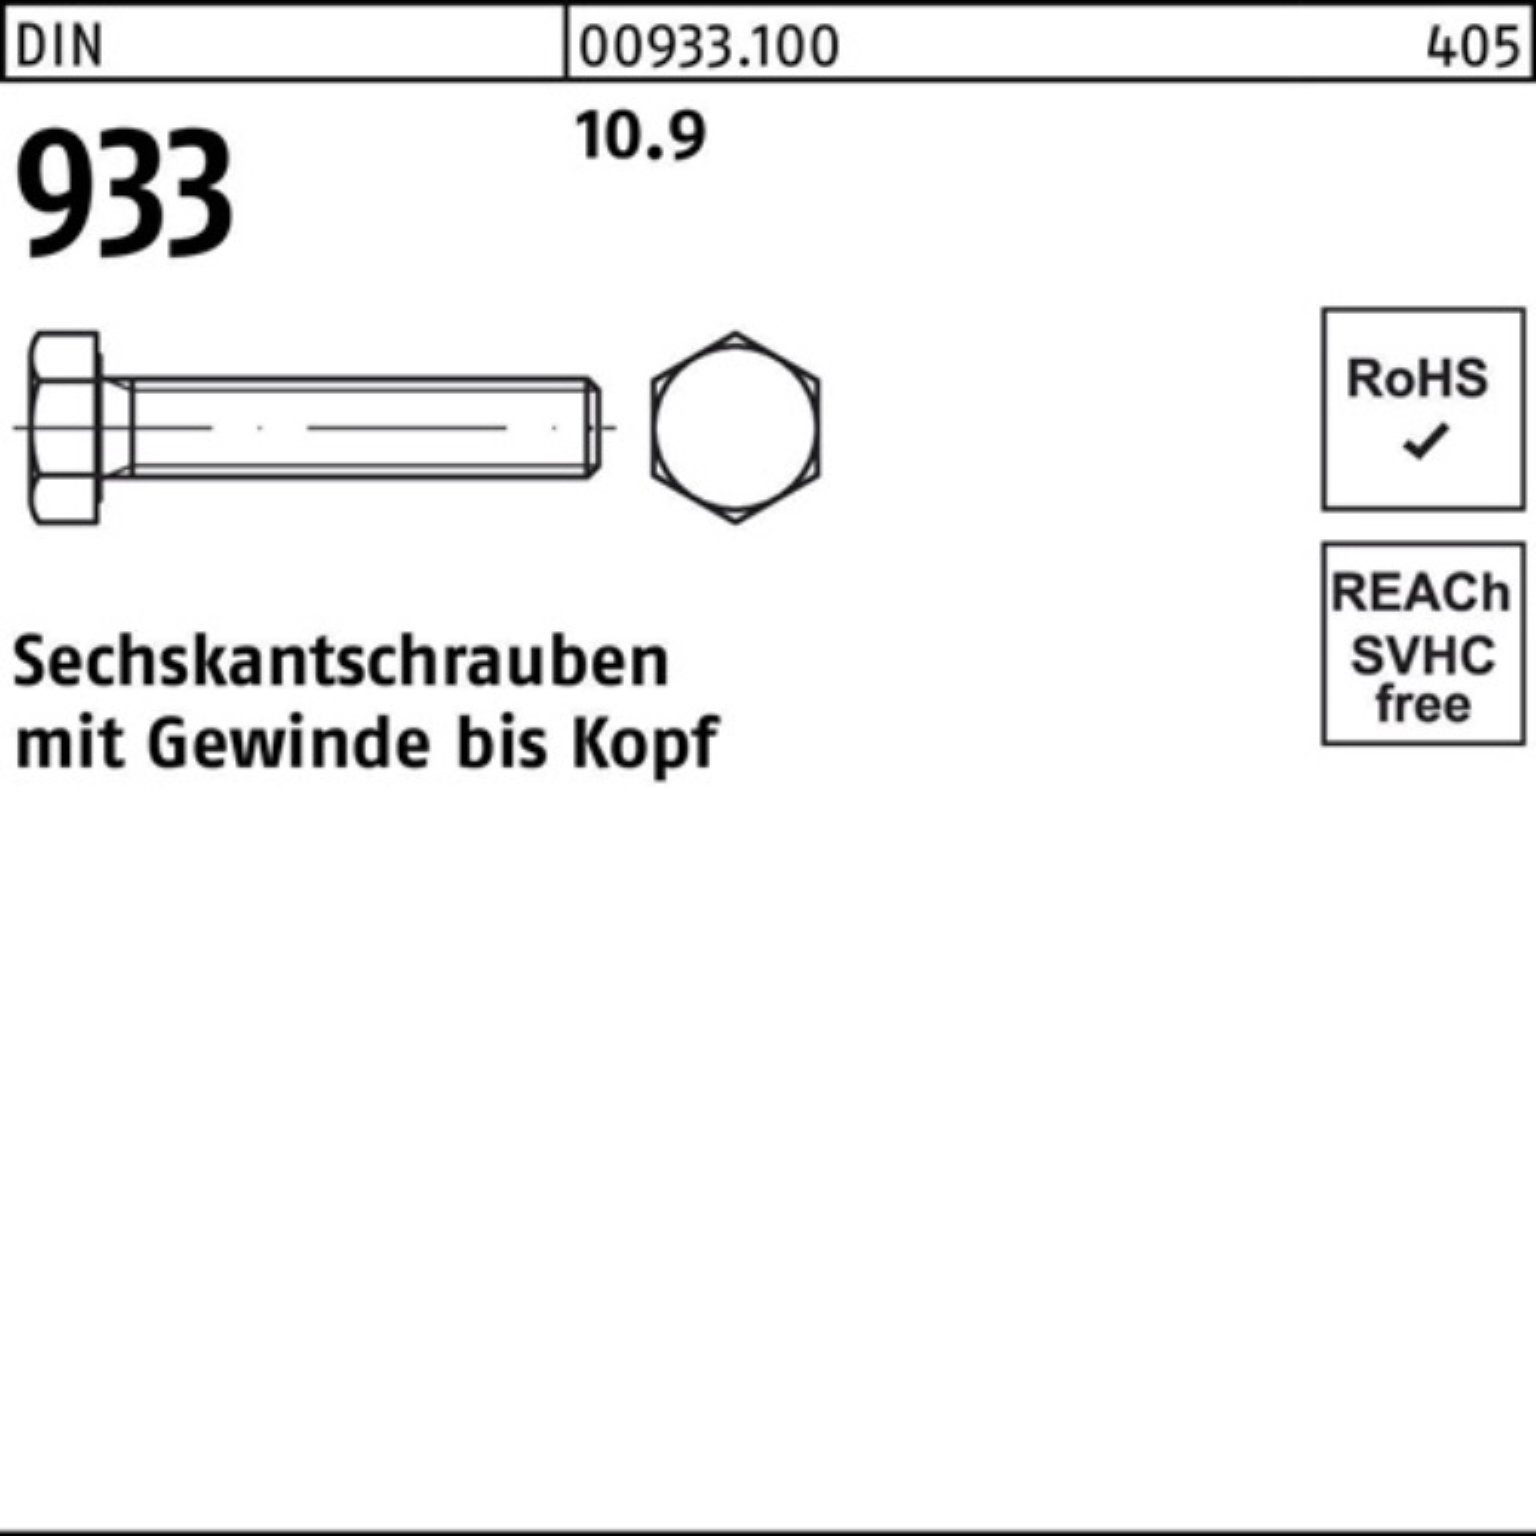 Reyher Sechskantschraube 100er DIN M16x Sechskantschraube Stück 10.9 Pack 933 1 933 280 VG DIN